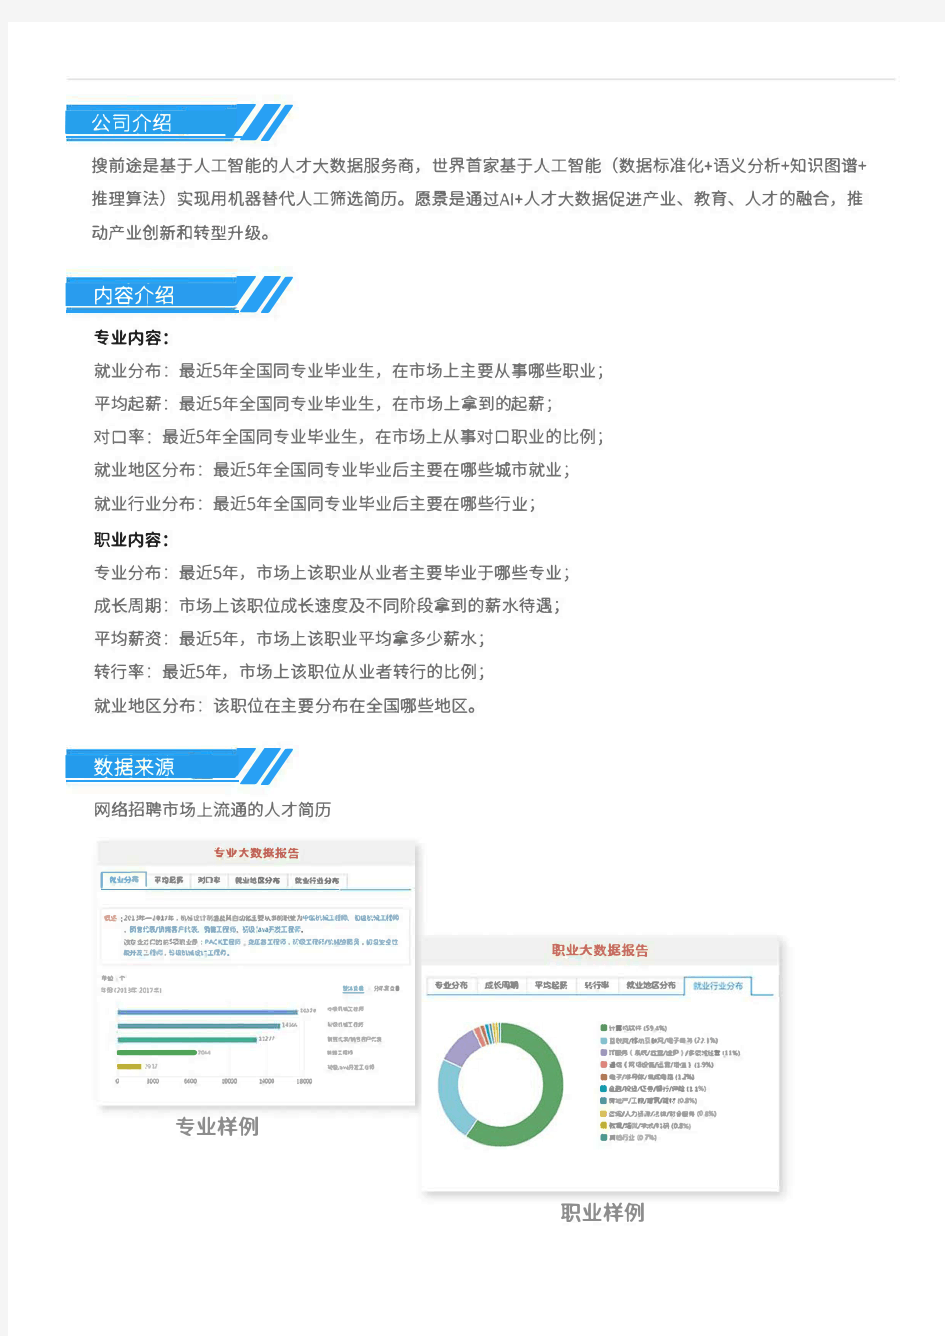 2013-2017年北京交通大学计算机类专业毕业生就业大数据报告